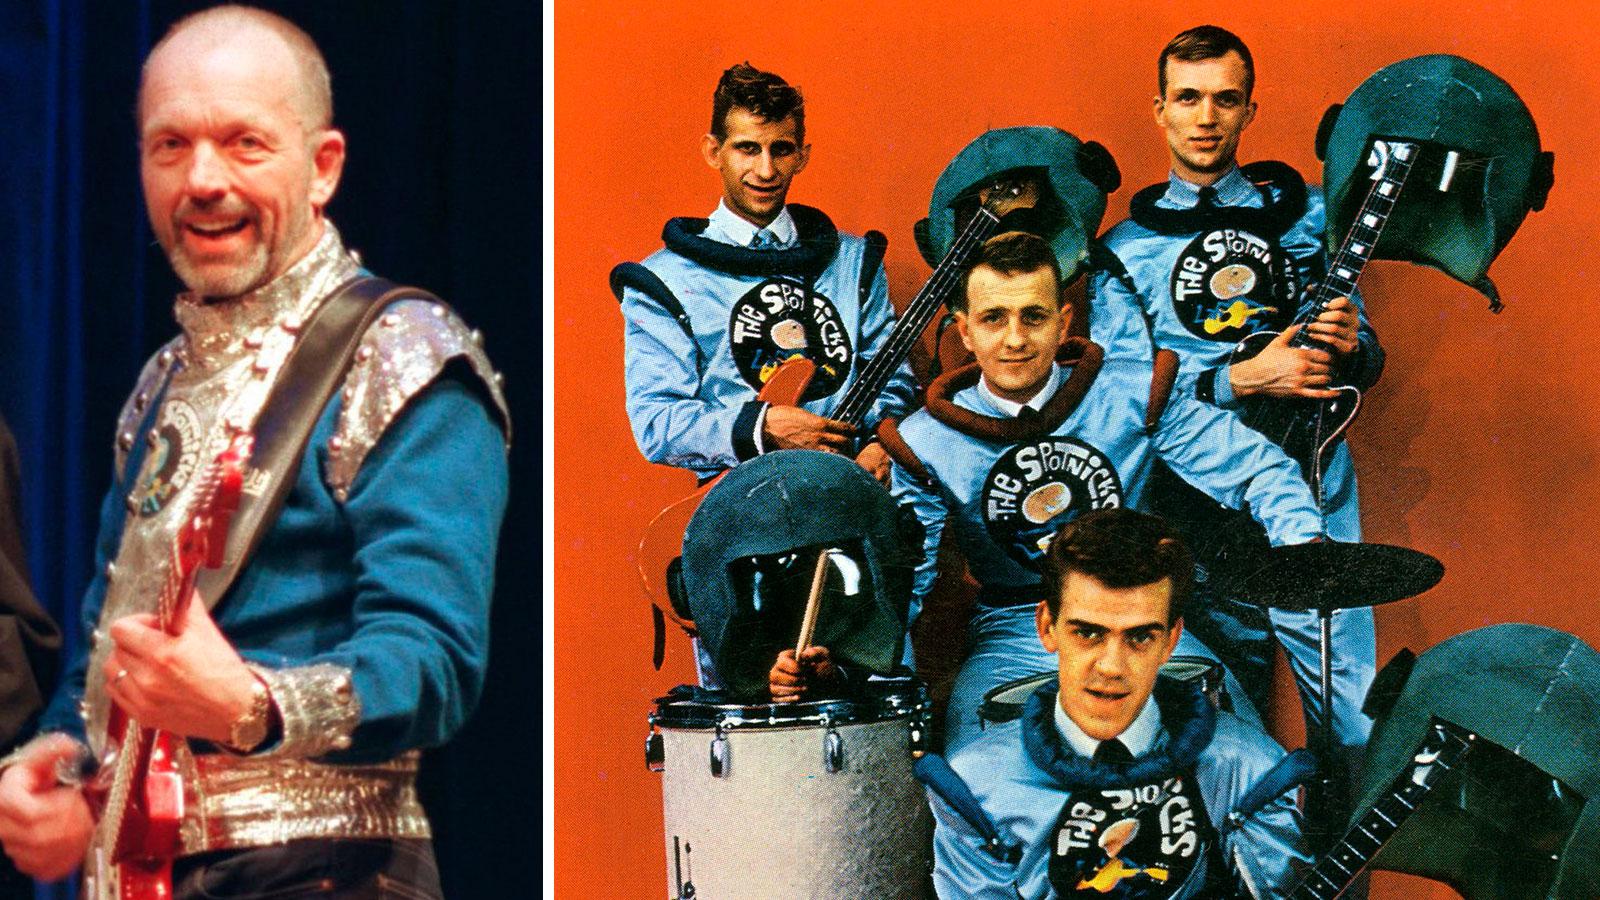 Bob Lander i legendariska göteborgsbandet The Spotniks är död. Han blev 78 år. På gruppbilden (från 1969) är Björn Thelin, Ove Johansson, Bo Winberg och Bob Lander.